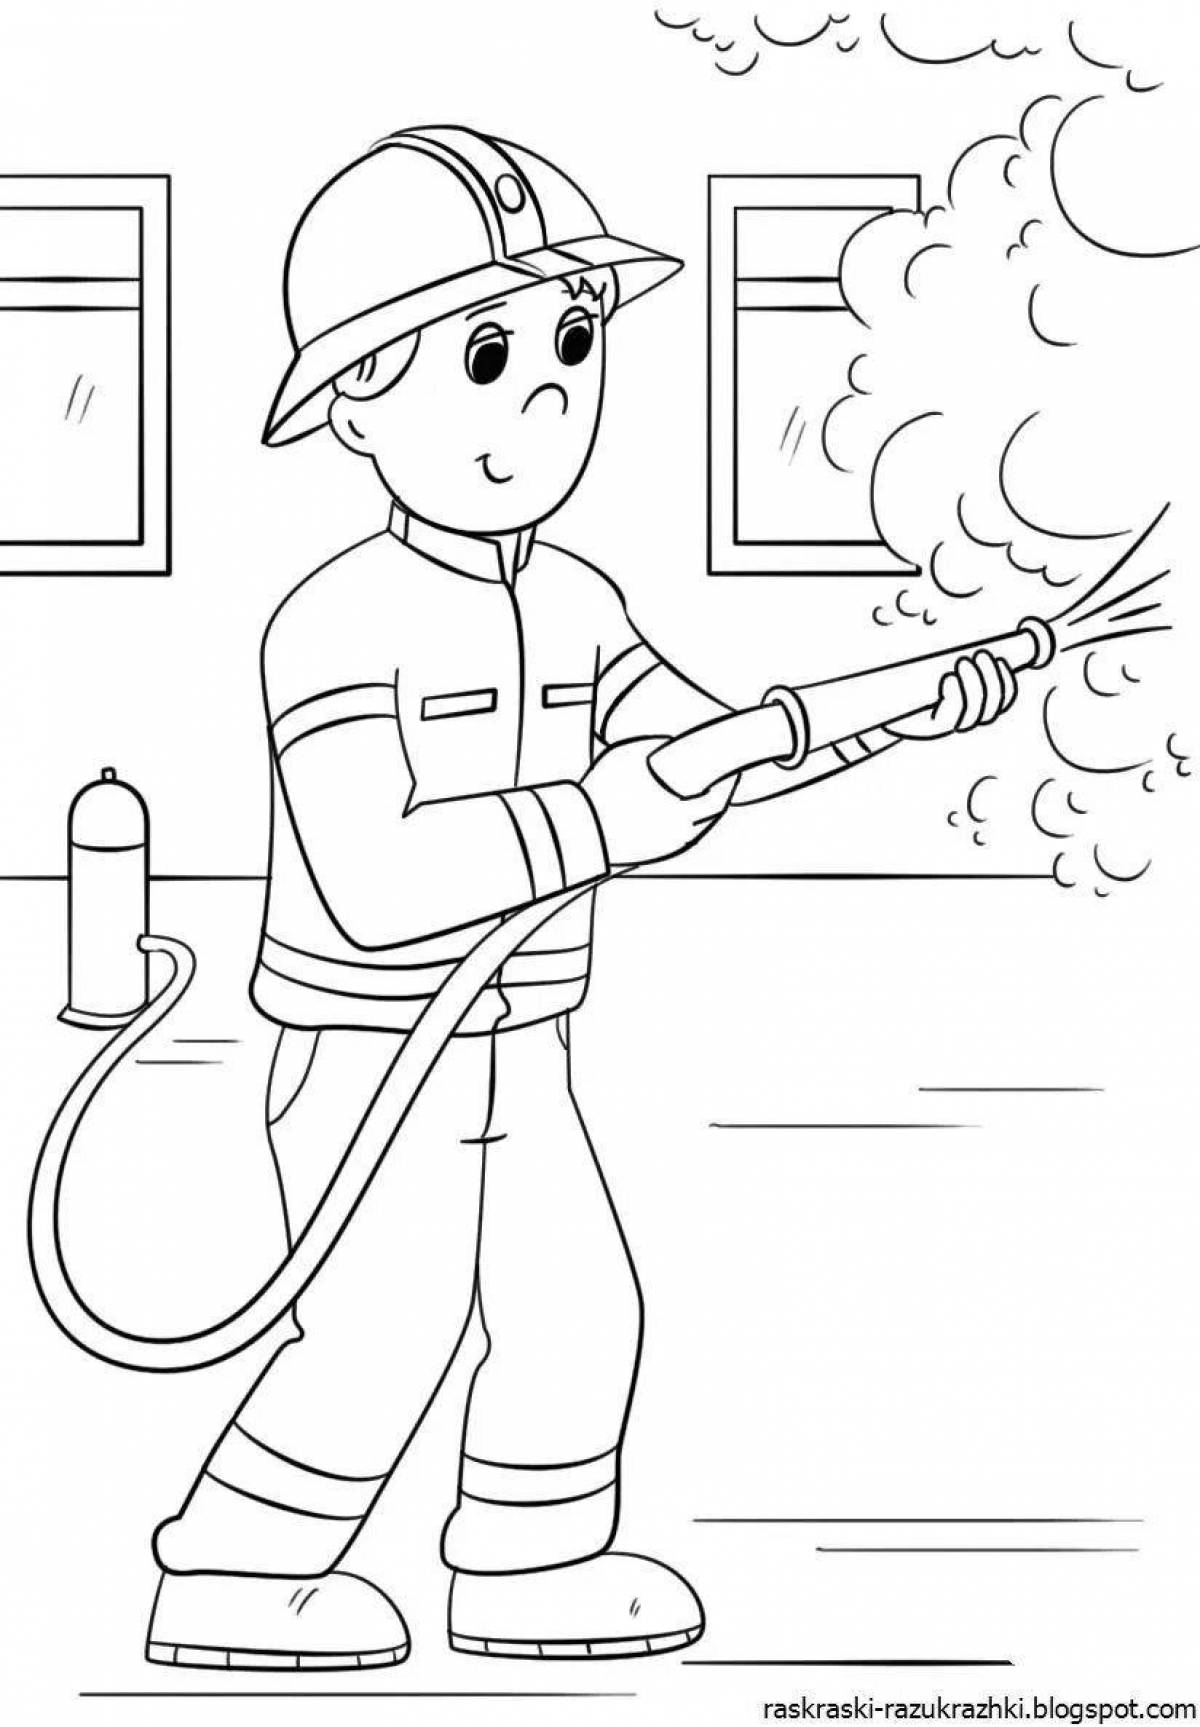 Adorable fireman drawing for kids